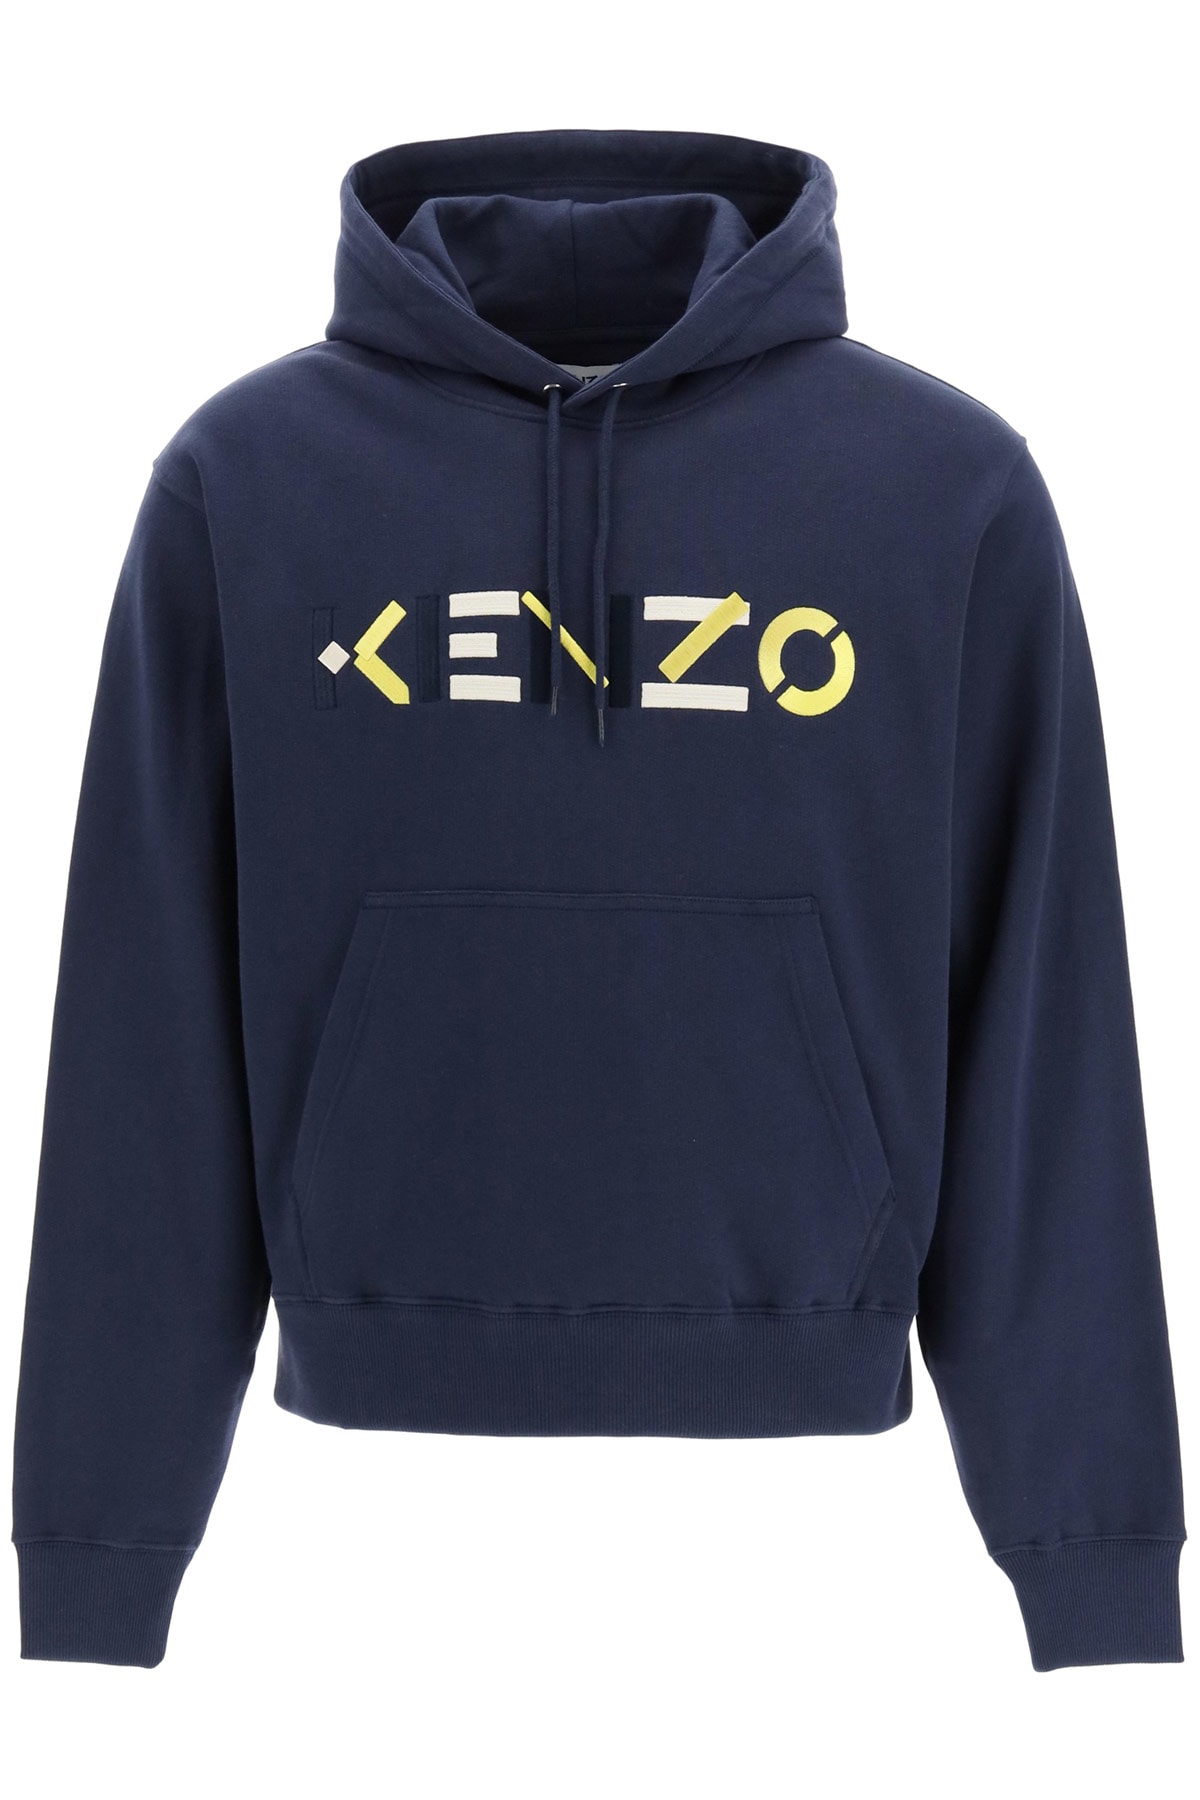 Kenzo Hooded Sweatshirt With Multicolor Logo Embroidery